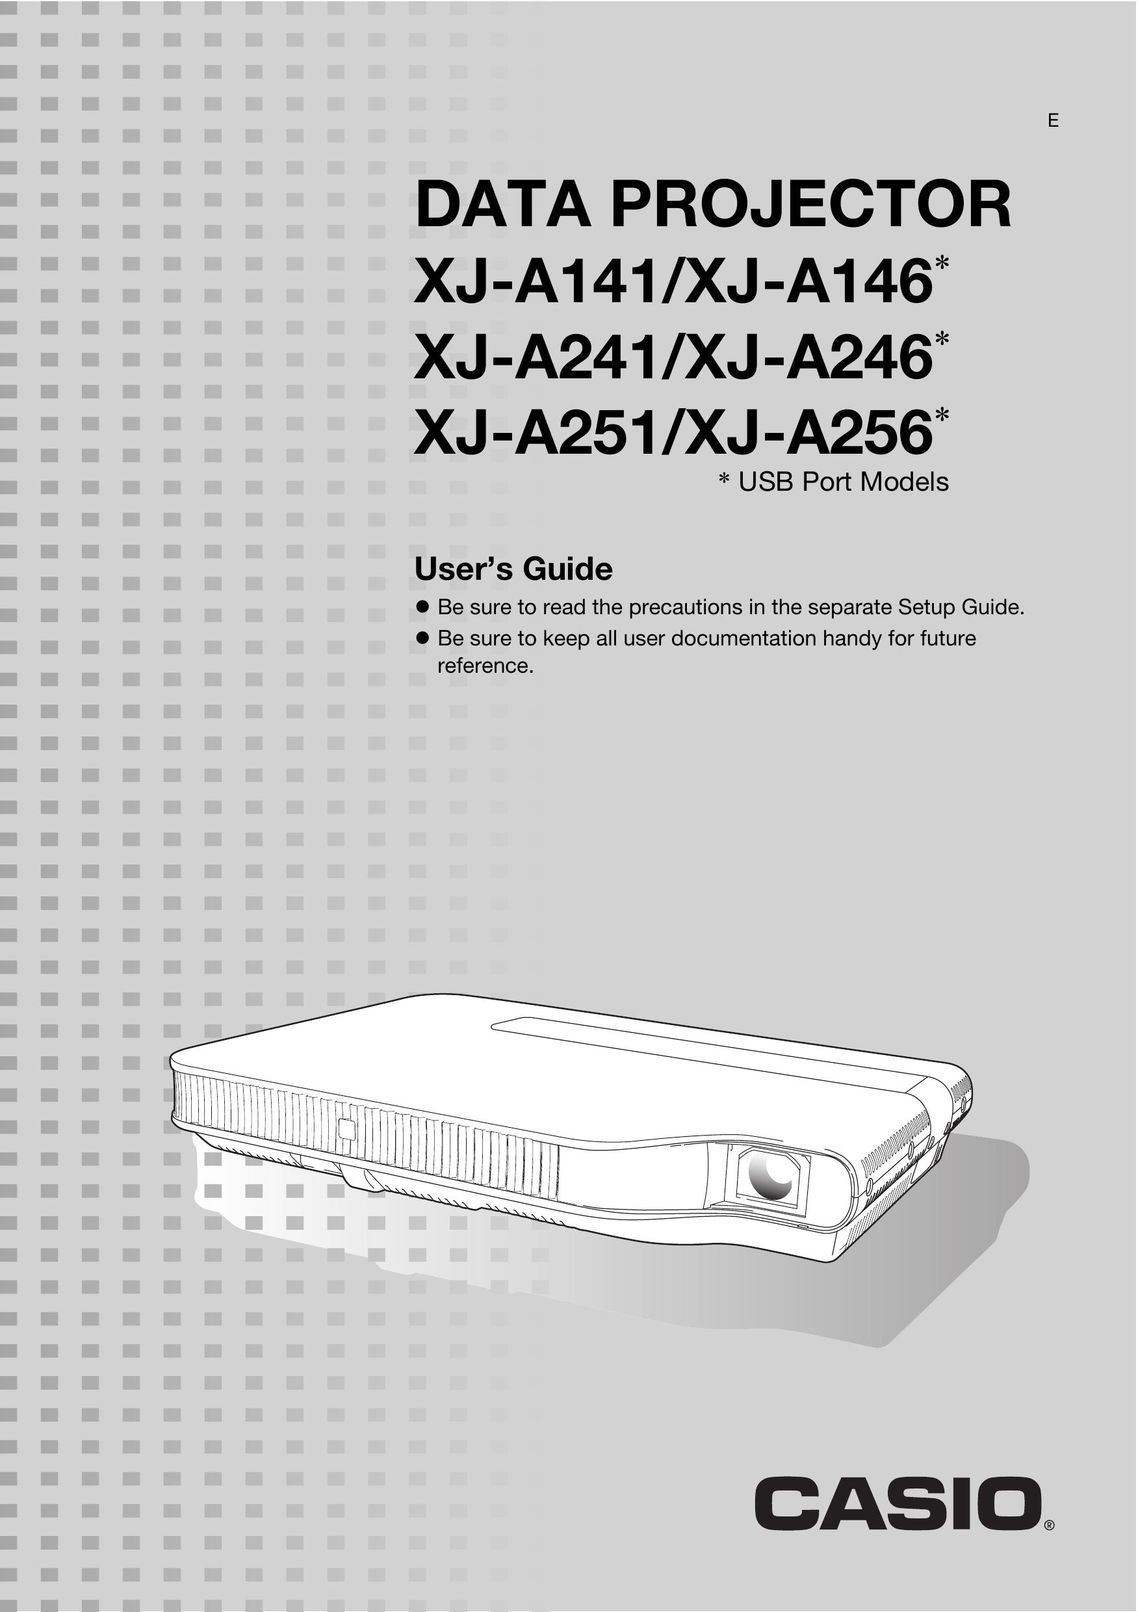 Casio XJ-A241/XJ-A246* Projector User Manual